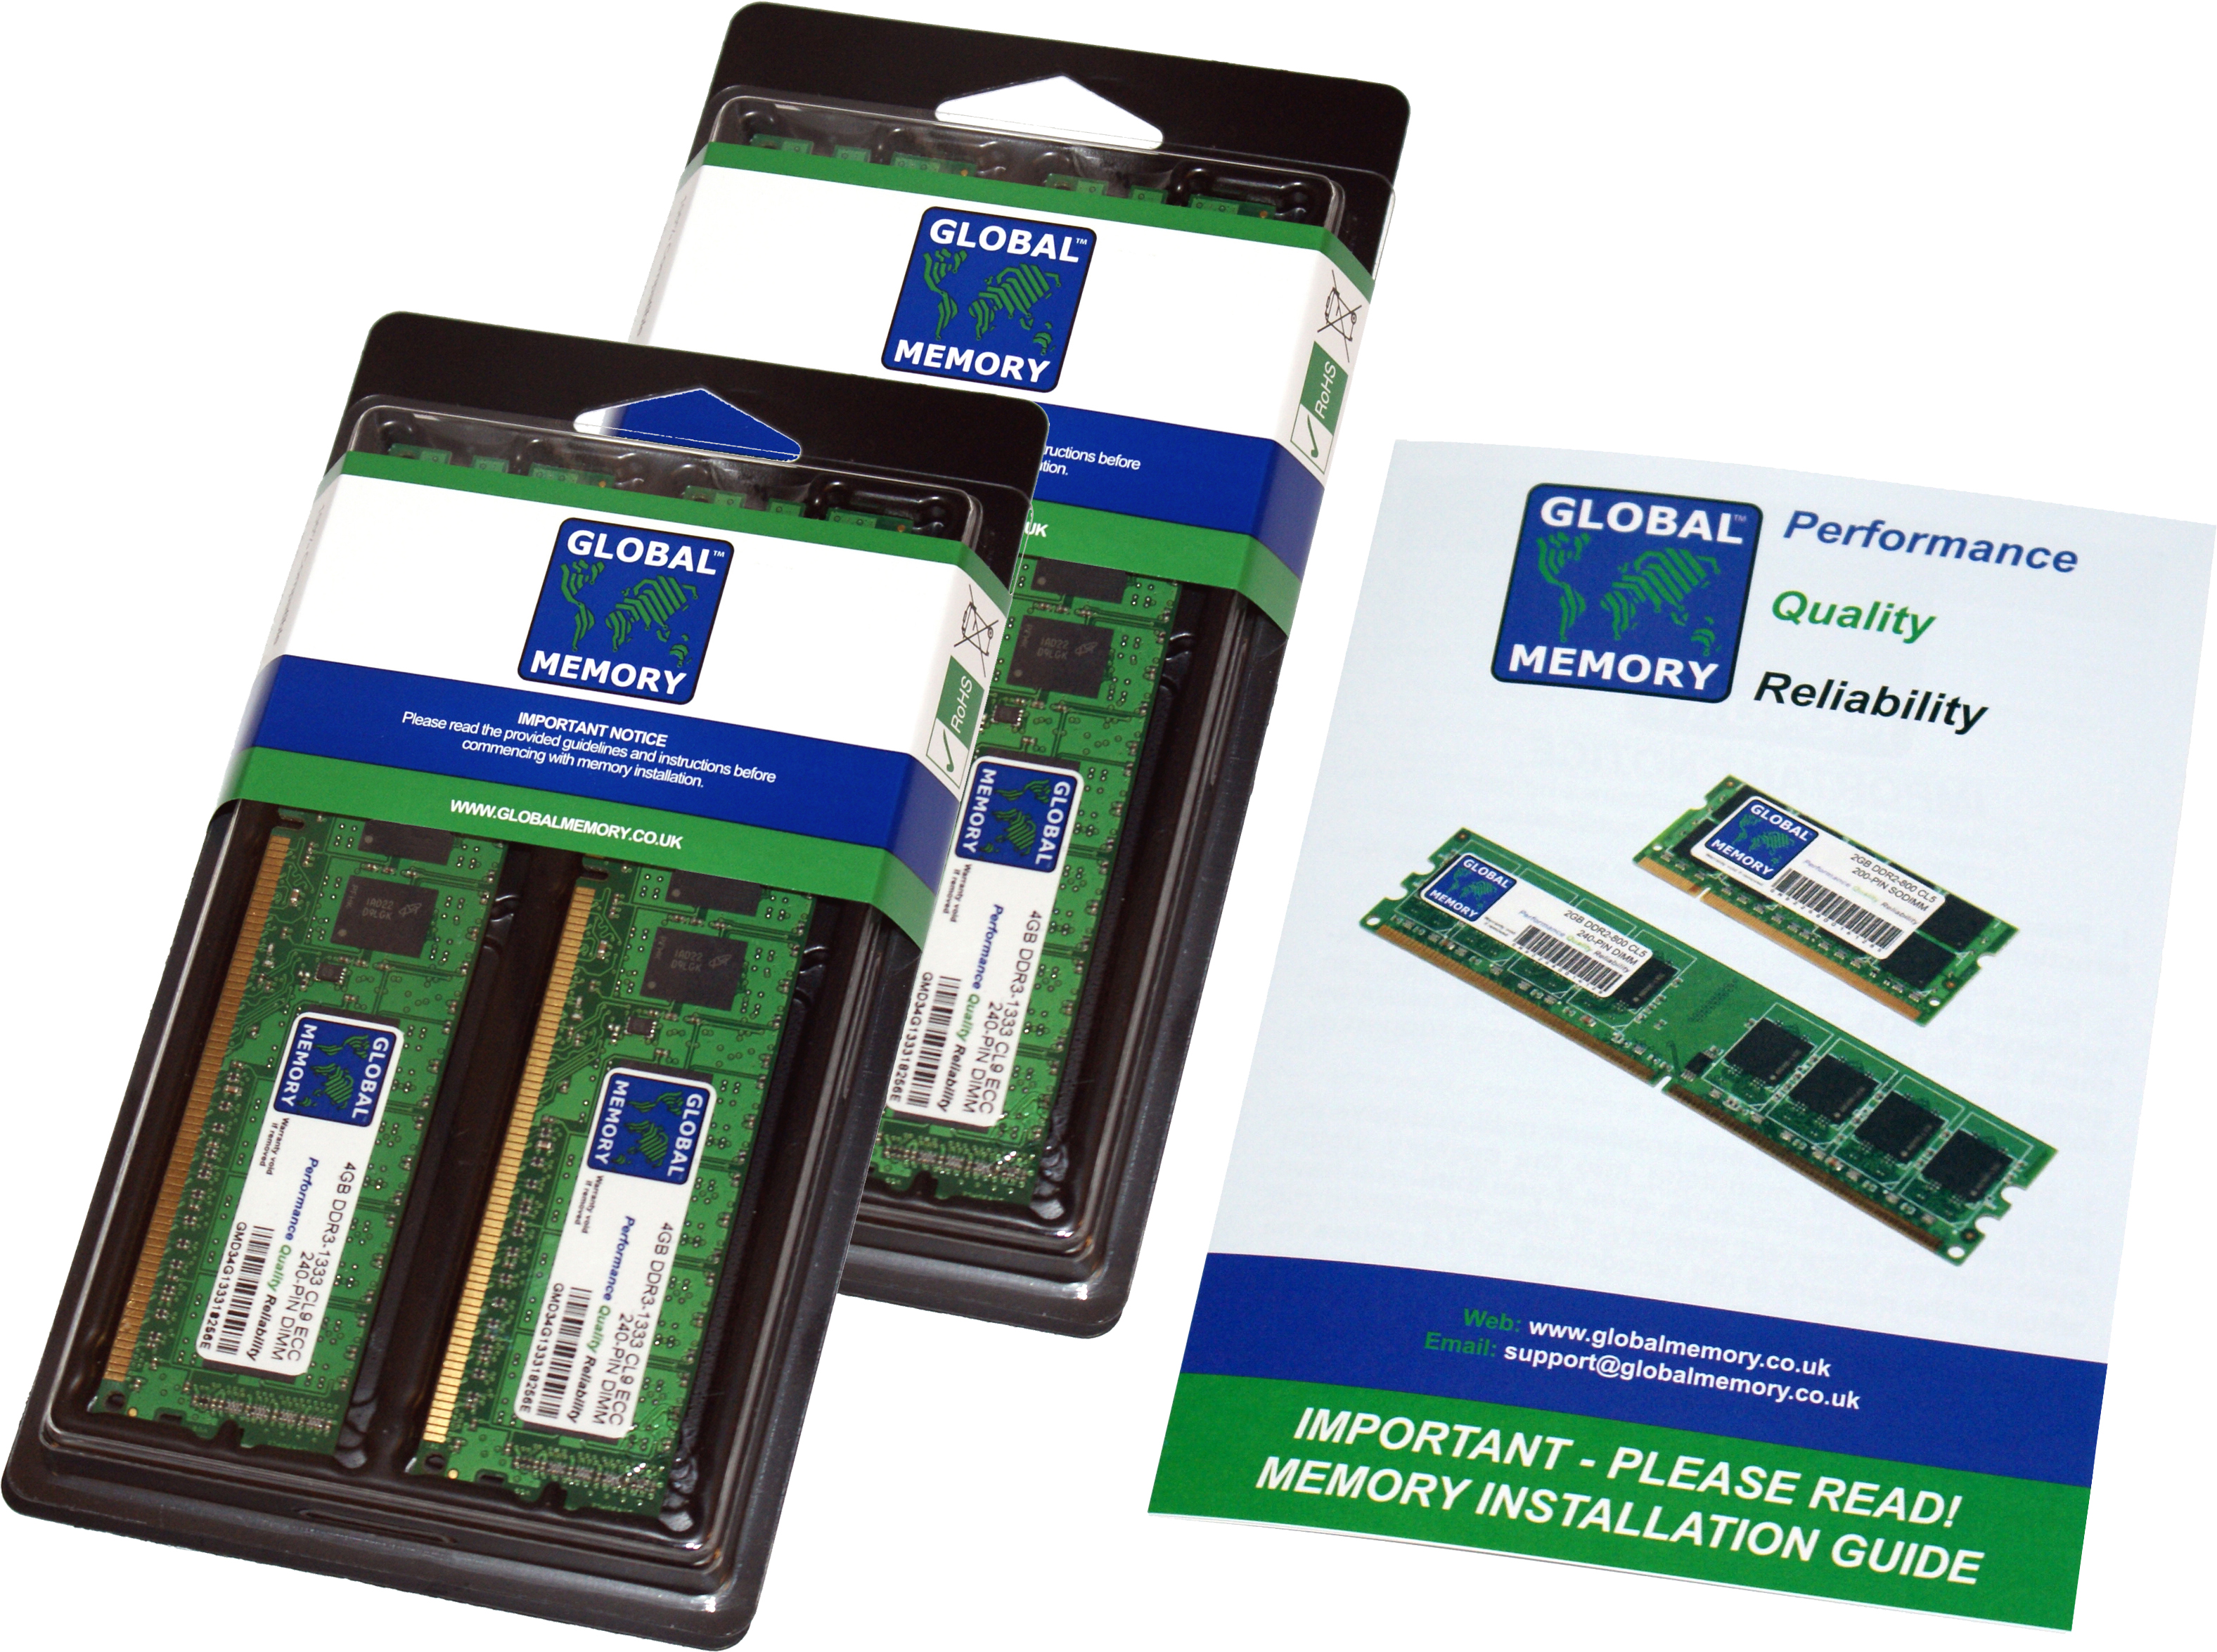 16GB (4 x 4GB) DDR4 2133MHz PC4-17000 288-PIN DIMM MEMORY RAM KIT FOR FUJITSU PC DESKTOPS